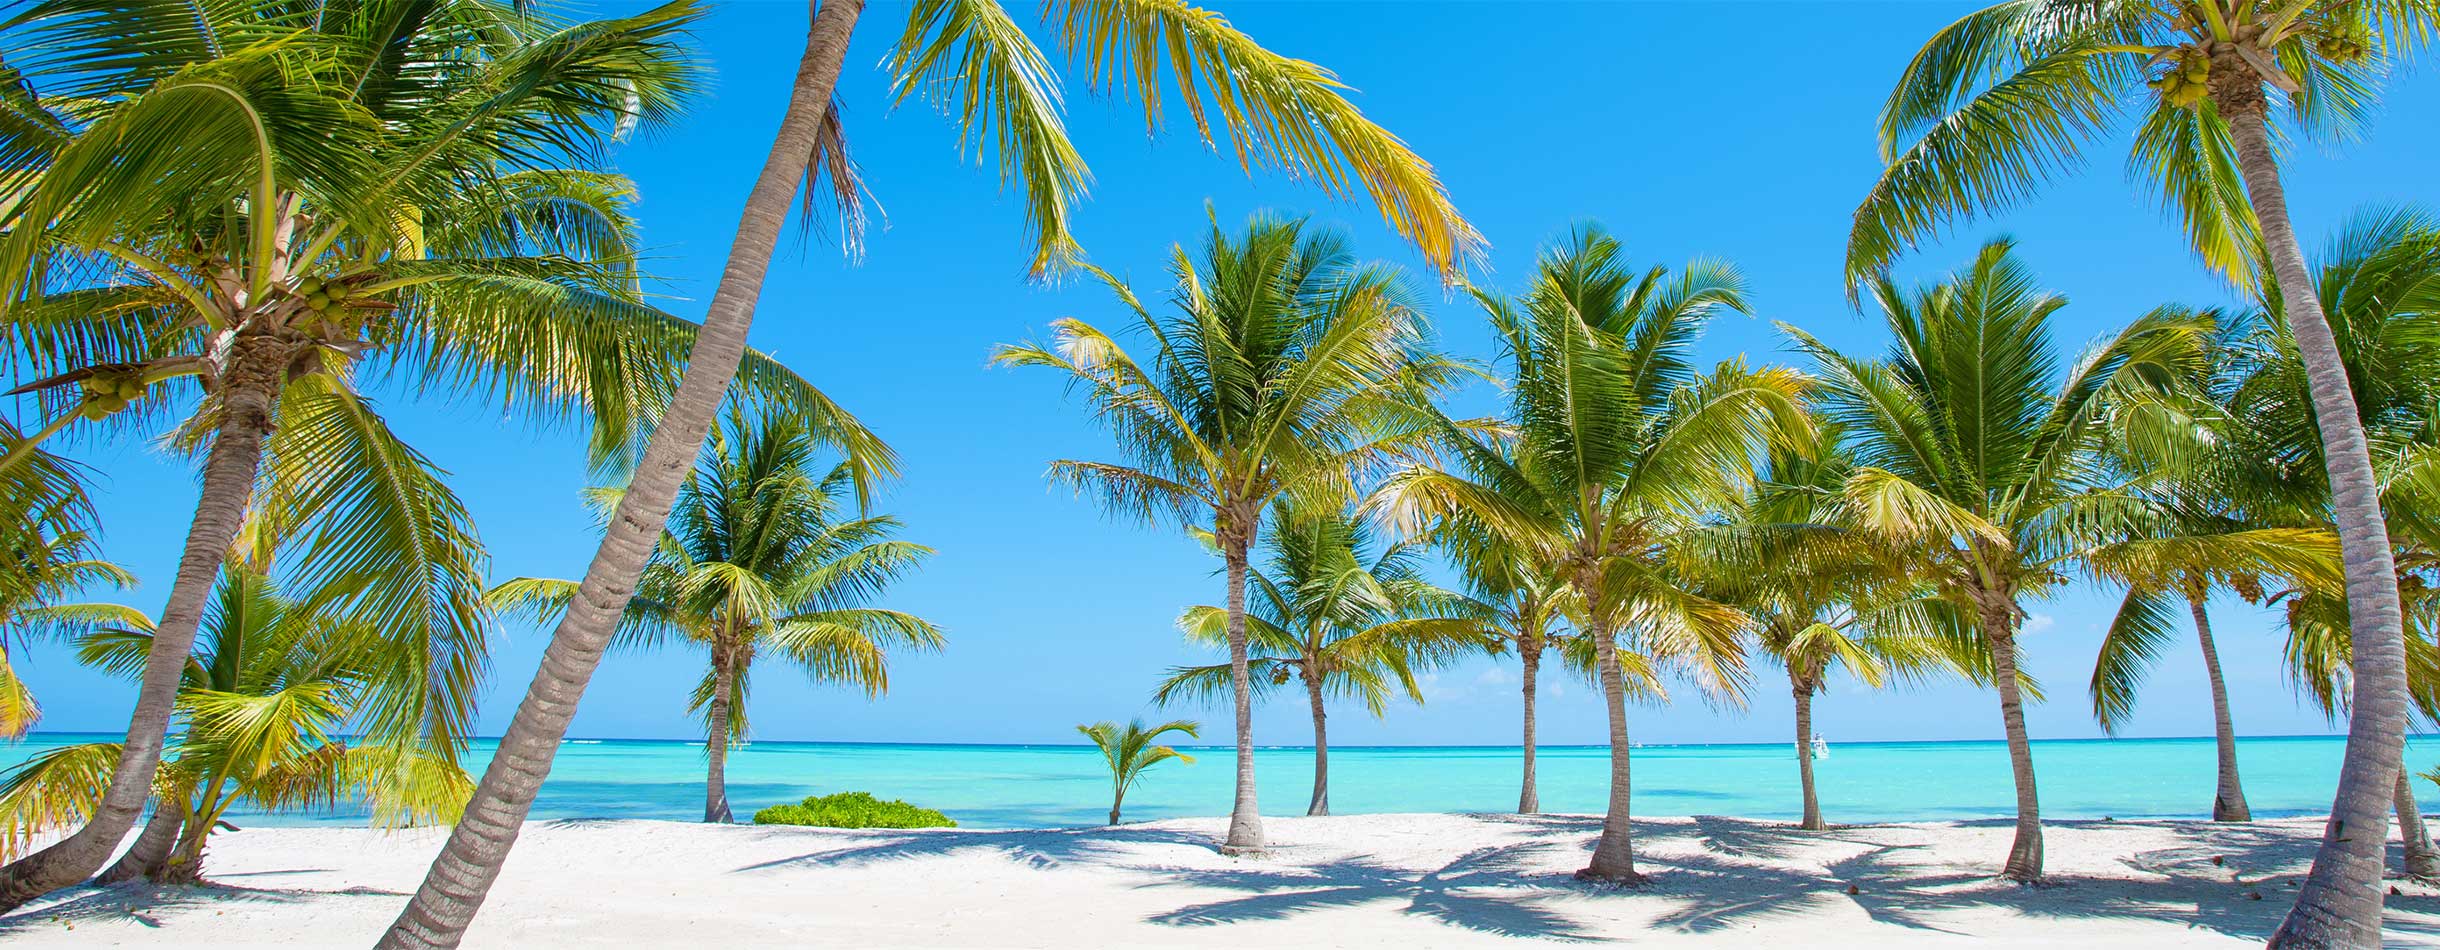 Palm trees on a sunny beach